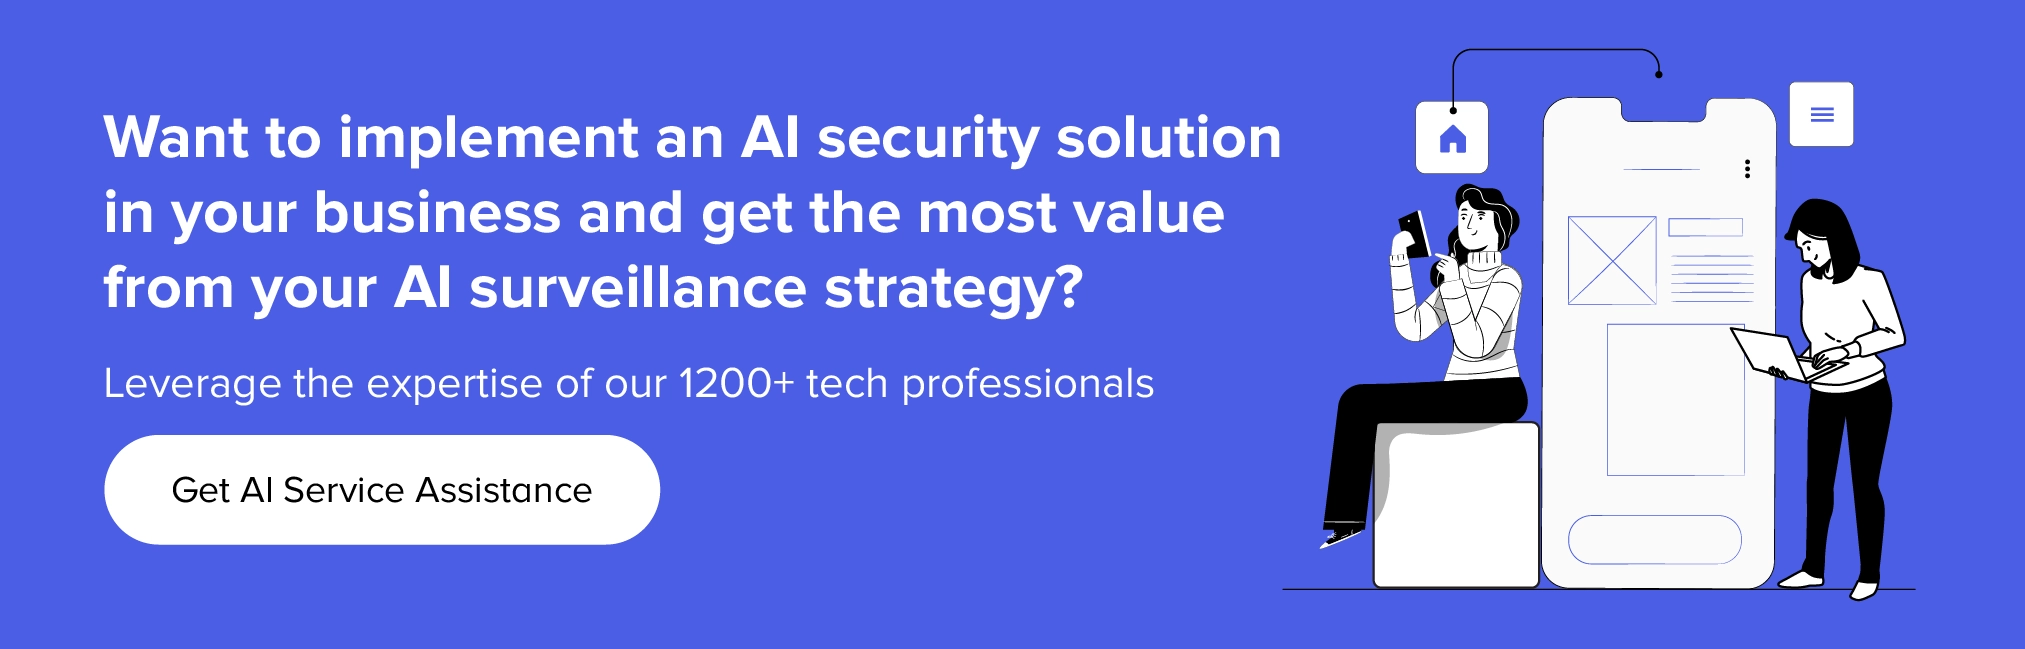 Contactați-ne pentru a implementa soluții de securitate AI în afacerea dvs